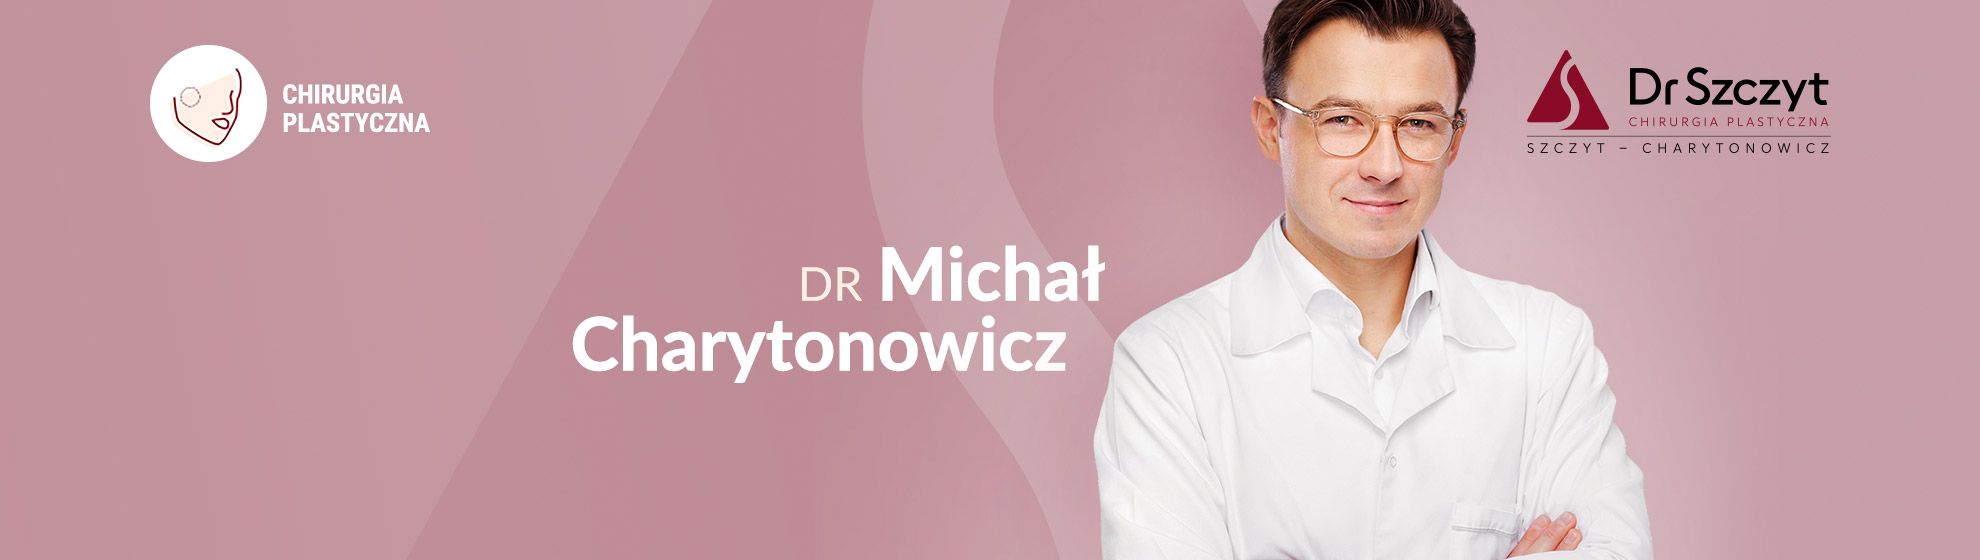 Dr Michał Charytonowicz Specjalista Chirurgii Plastycznej